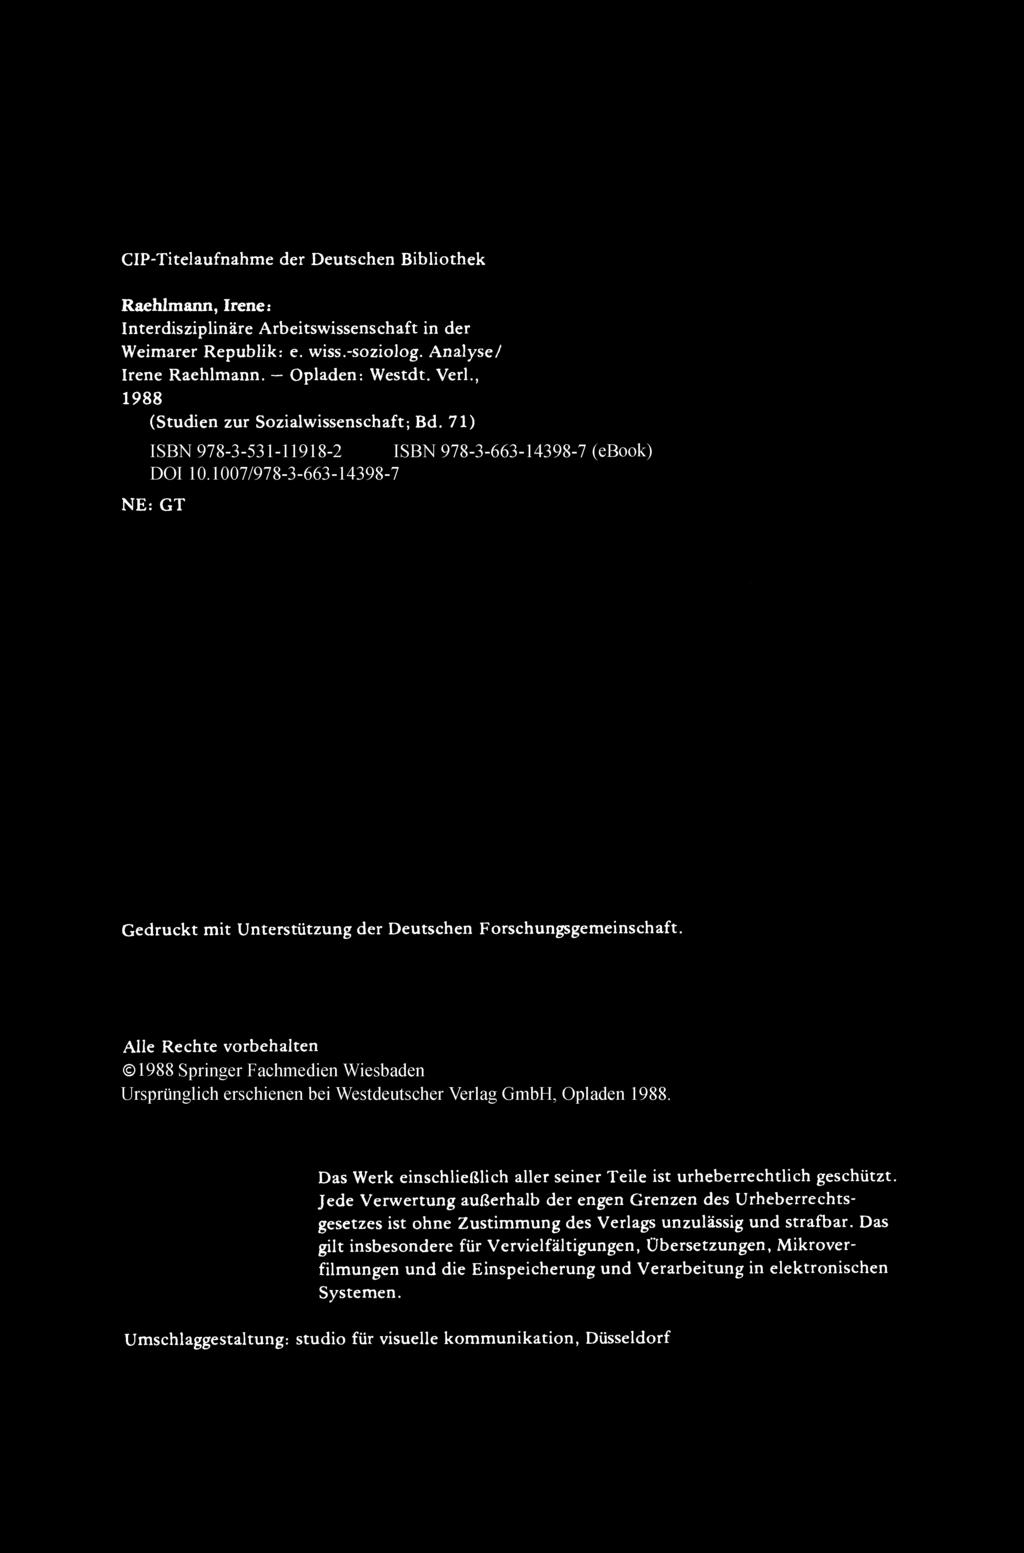 CIP-Titelaufnahme der Deutschen Bibliothek Raehlmann, Irene: Interdiszip linare Arbeitswissenschaft in der Weimarer Republik: e. wiss.-soziolog. An alysel [rene Raehlmann. - Opladen: Westdt. VerI.